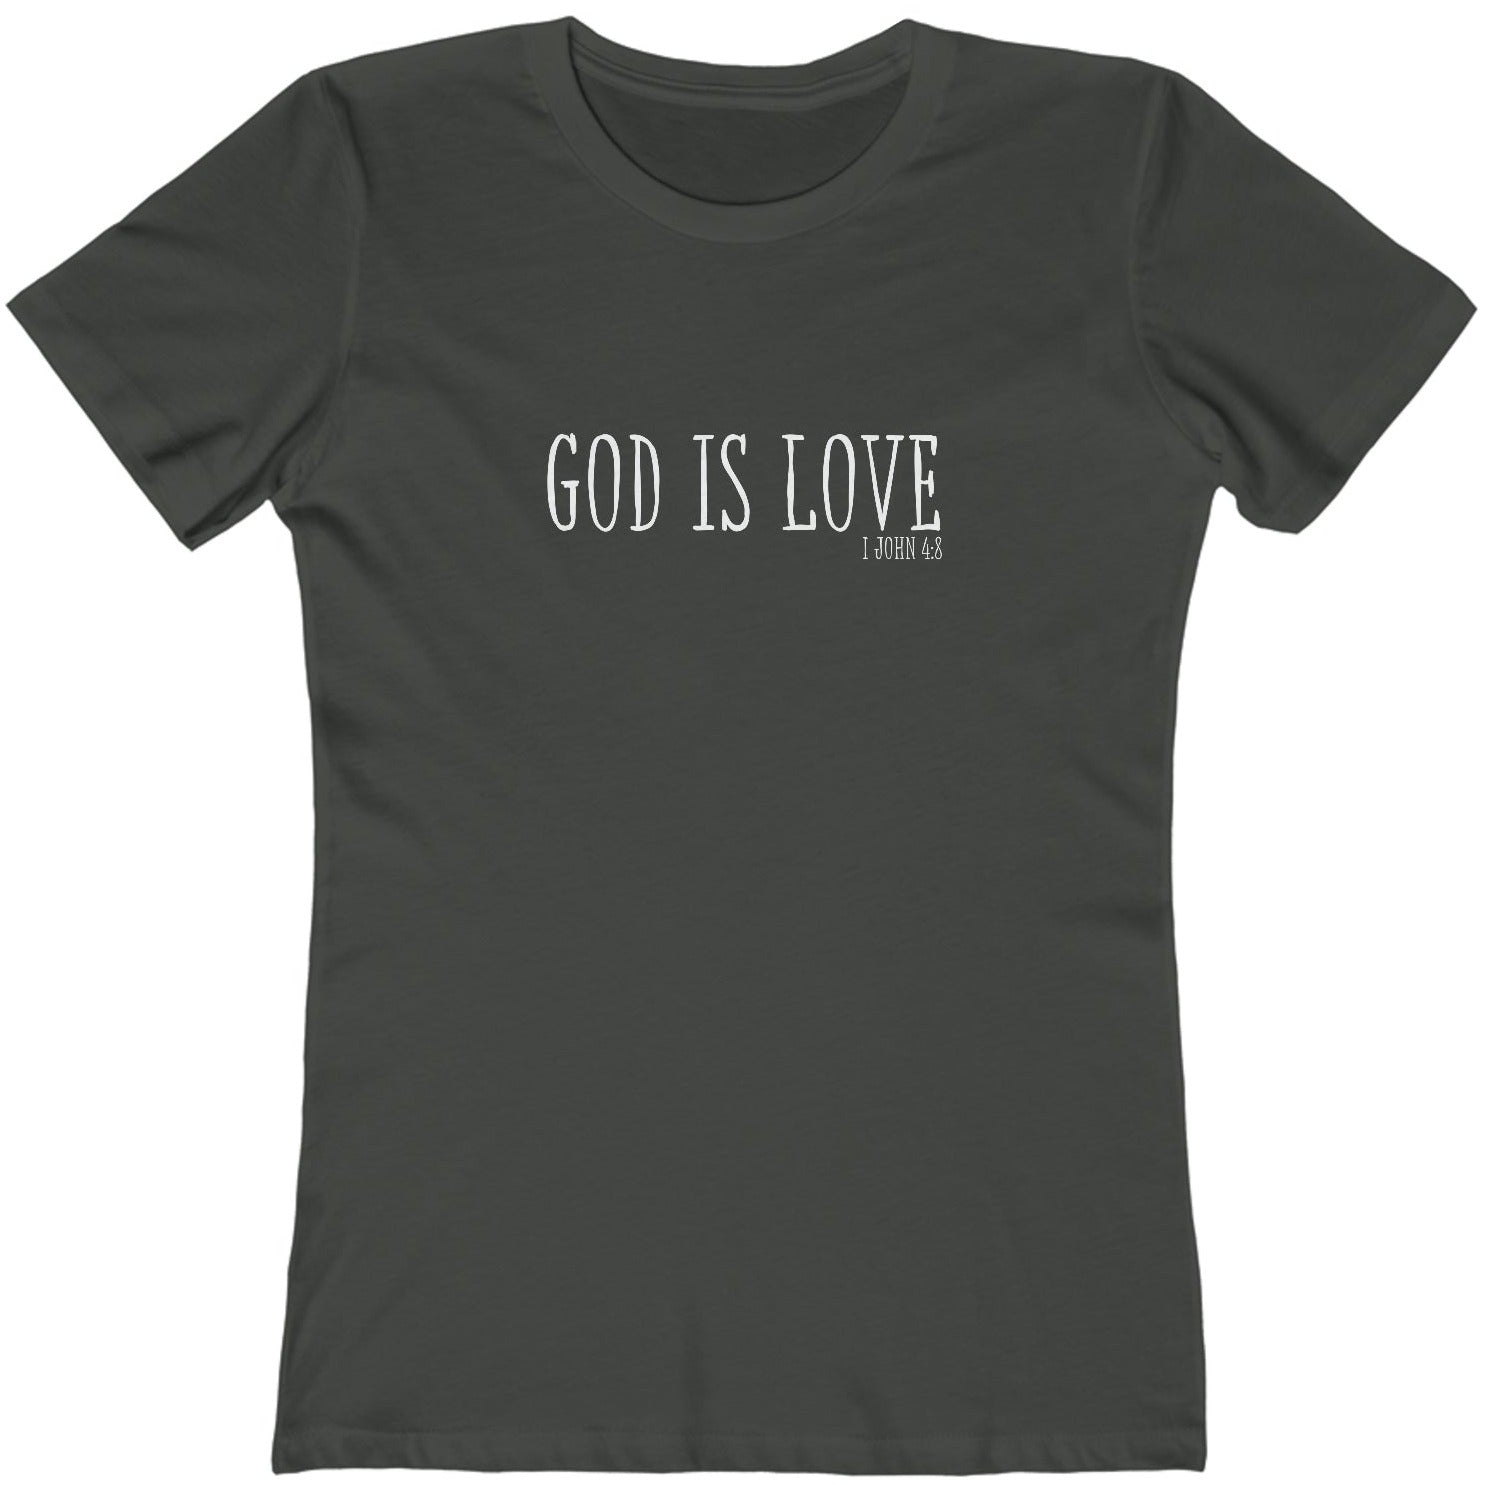 1 John 4:8 God is Love, Christian T-shirt for Women heavy metal